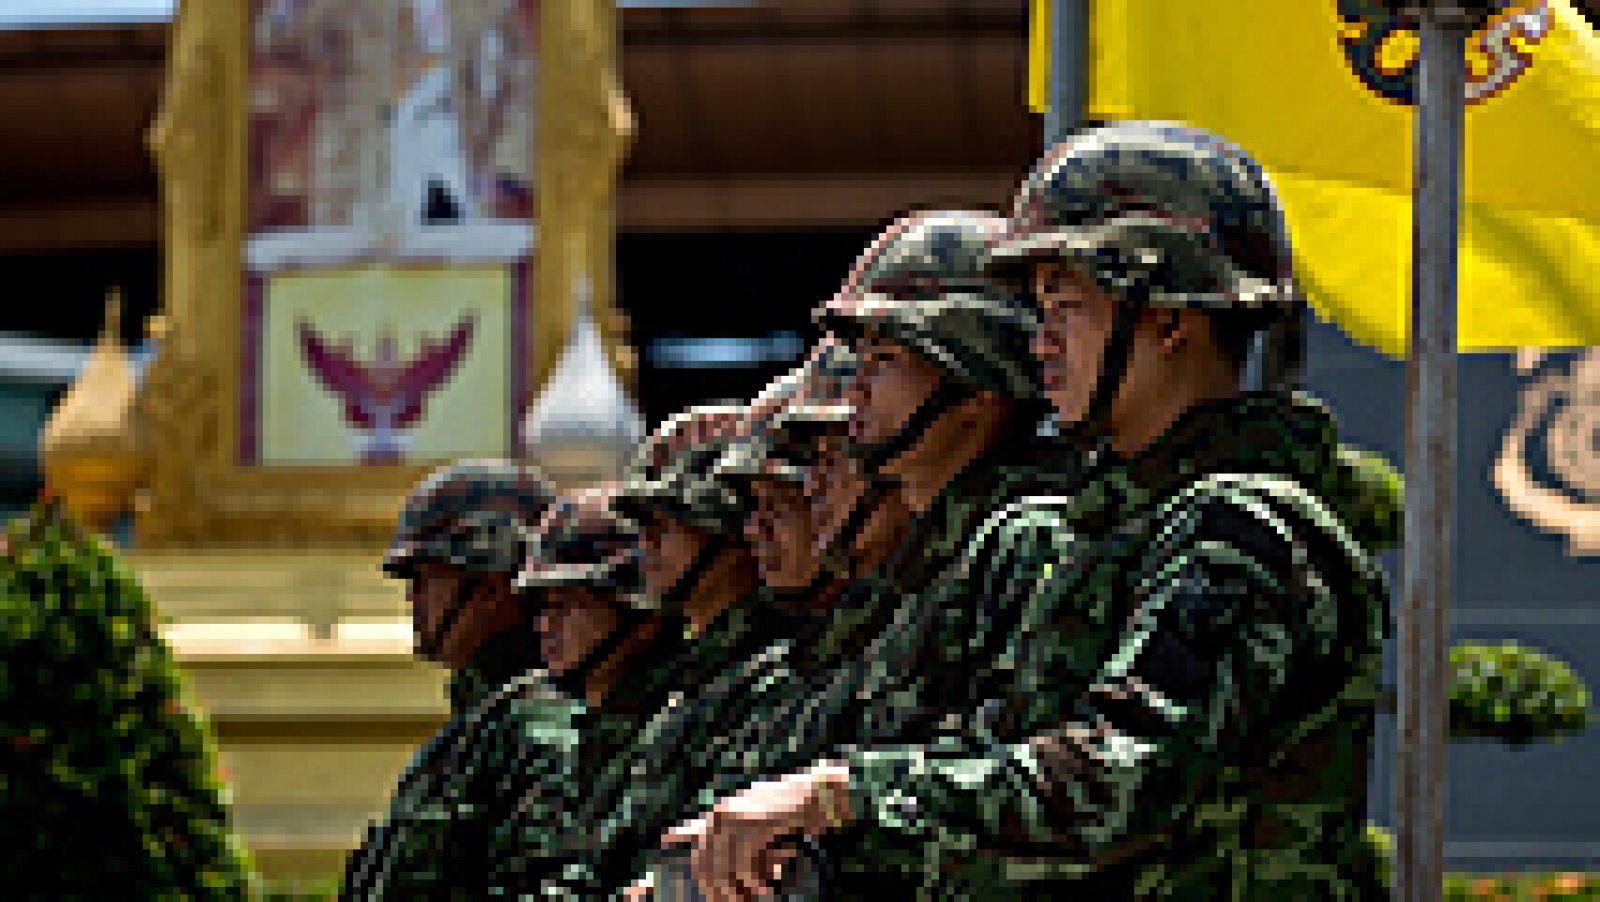  El Ejército de Tailandia dio hoy un golpe de Estado, tras considerar fracasado su intento de mediar entre el Gobierno y la oposición y después de ocho meses de protestas en las calles que han causado 28 muertos y cientos de heridos. Los militares han prohibido las asambleas públicas y han ampliado la censura a los medios de información extranjeros.